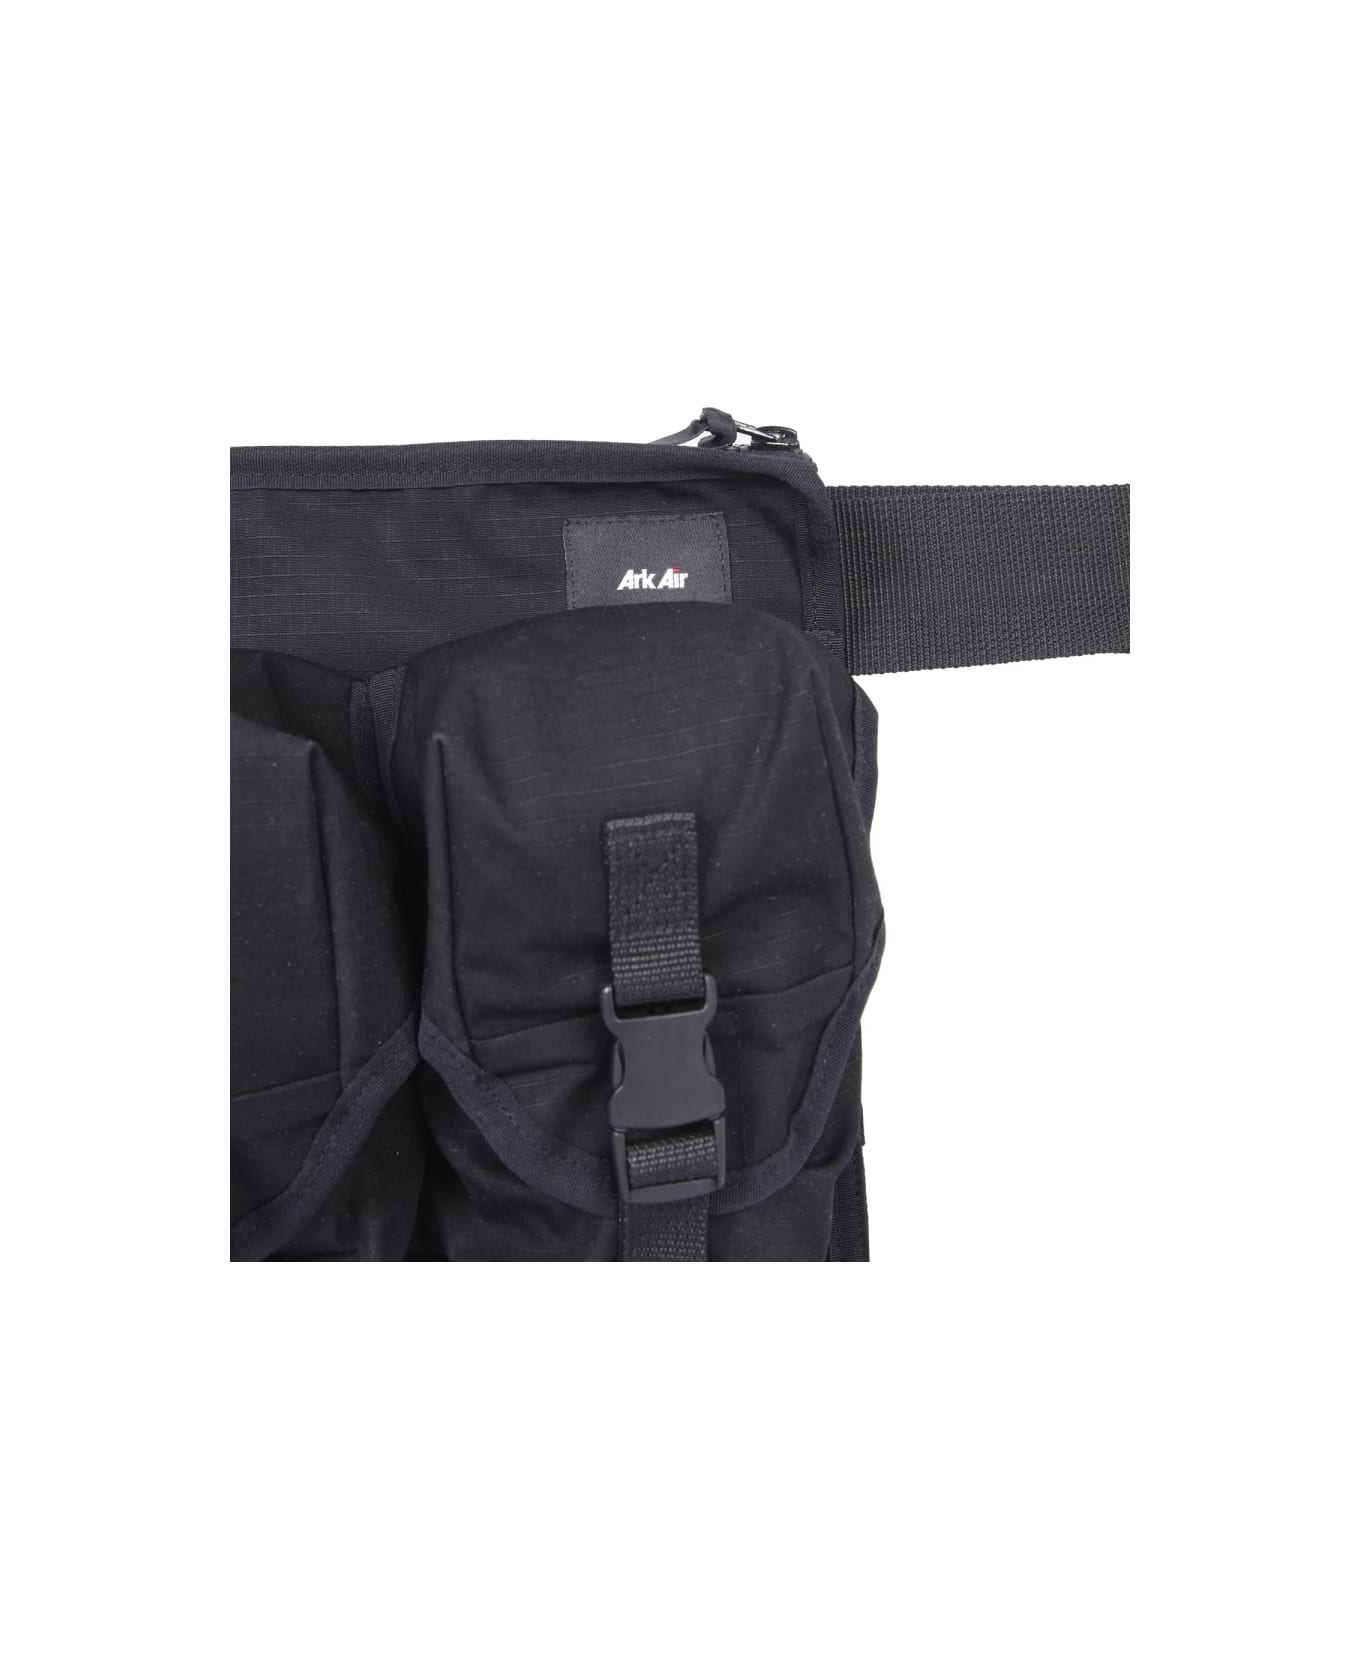 ArkAir Chest Bag Rig - BLACK ベルトバッグ